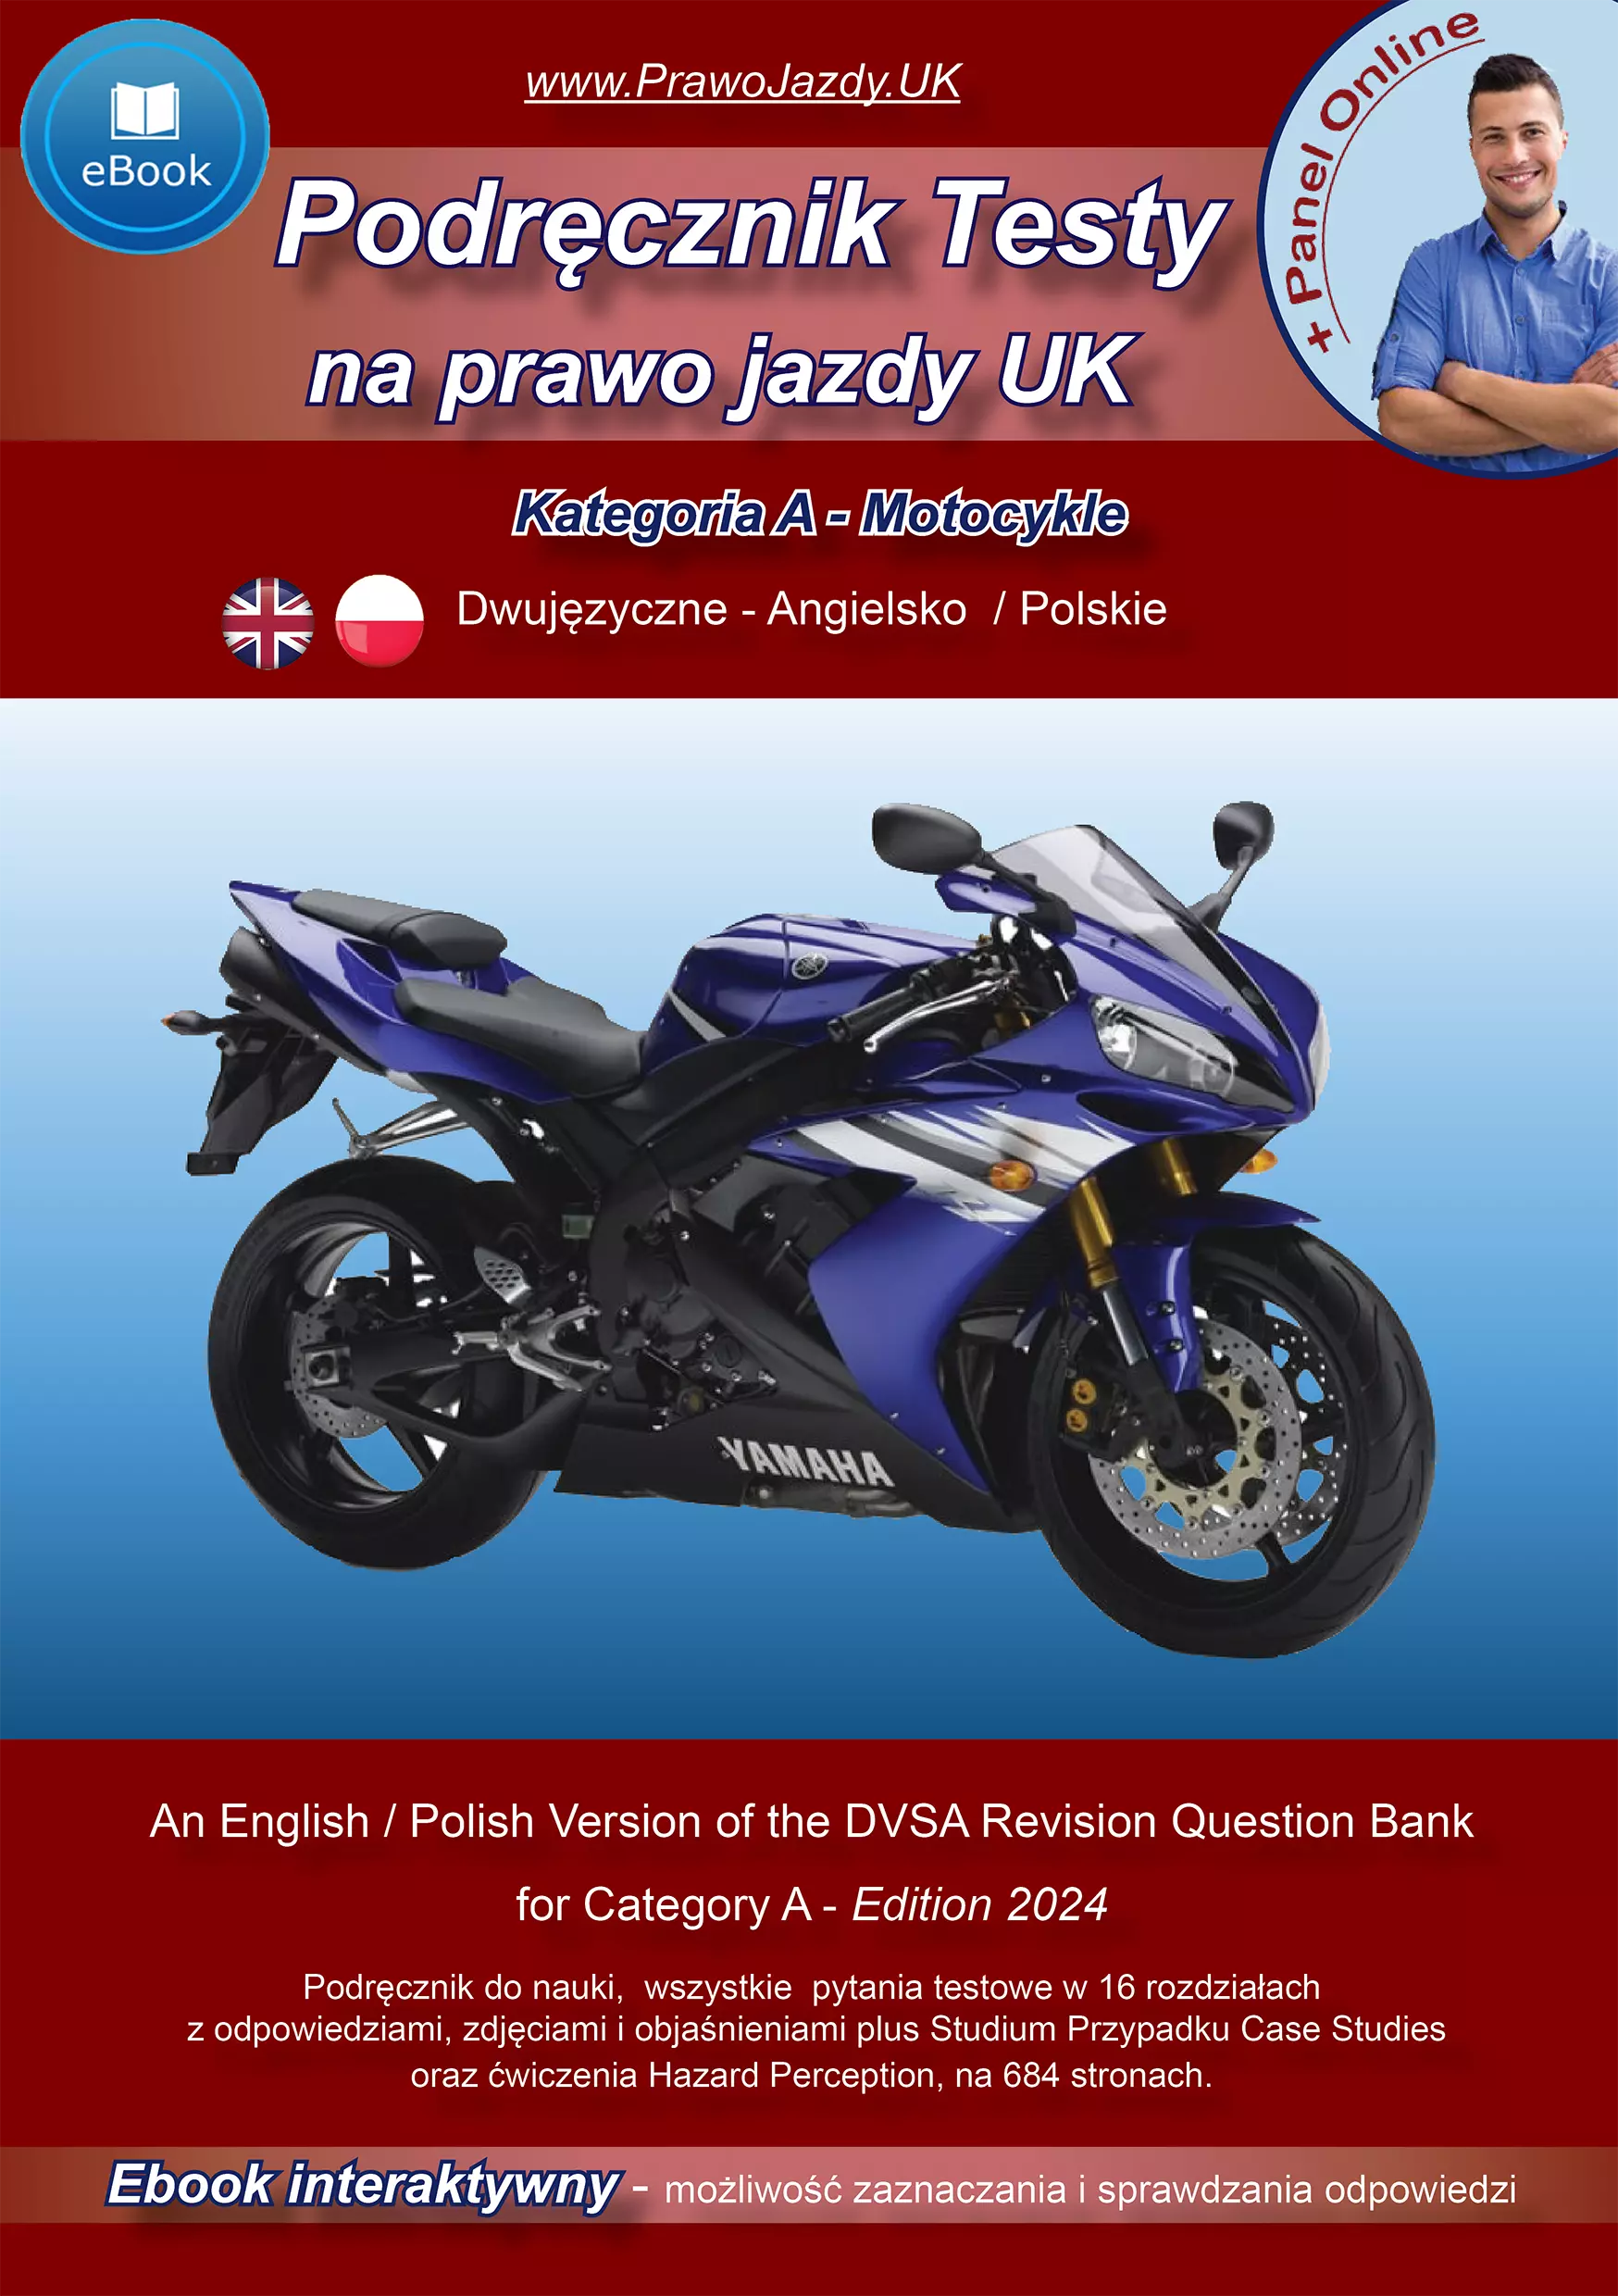 Dwujęzyczne Angielsko - Polskie Testy na prawo jazdy w UK Motocykle